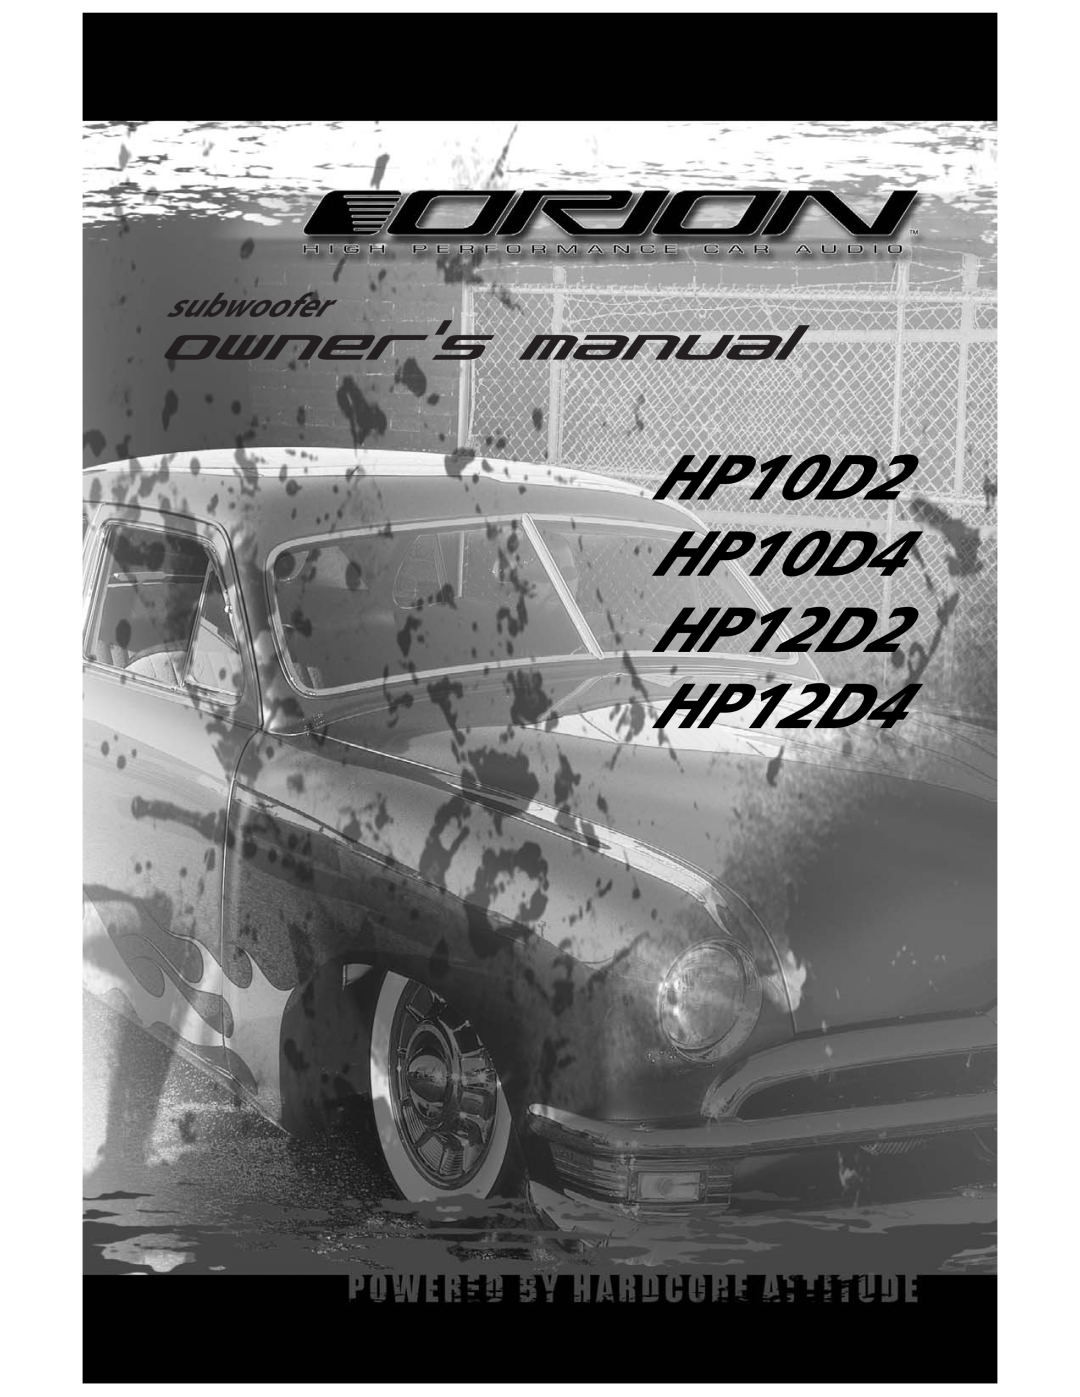 Orion Car Audio manual HP10D2 HP10D4 HP12D2 HP12D4, subwoofer 